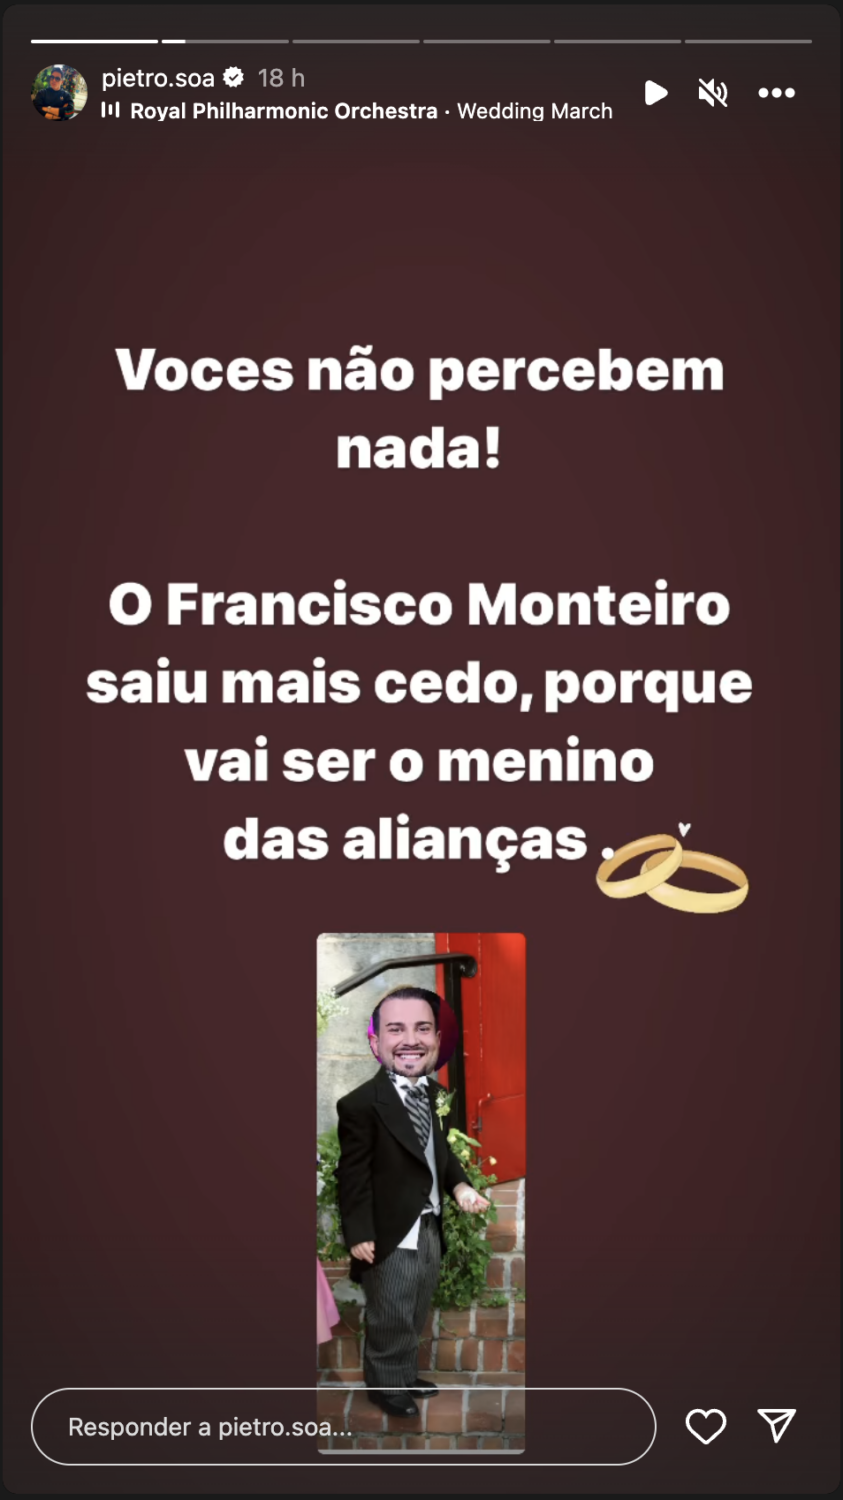 Pedro Soá revela ‘motivo’ da desistência de Francisco Monteiro